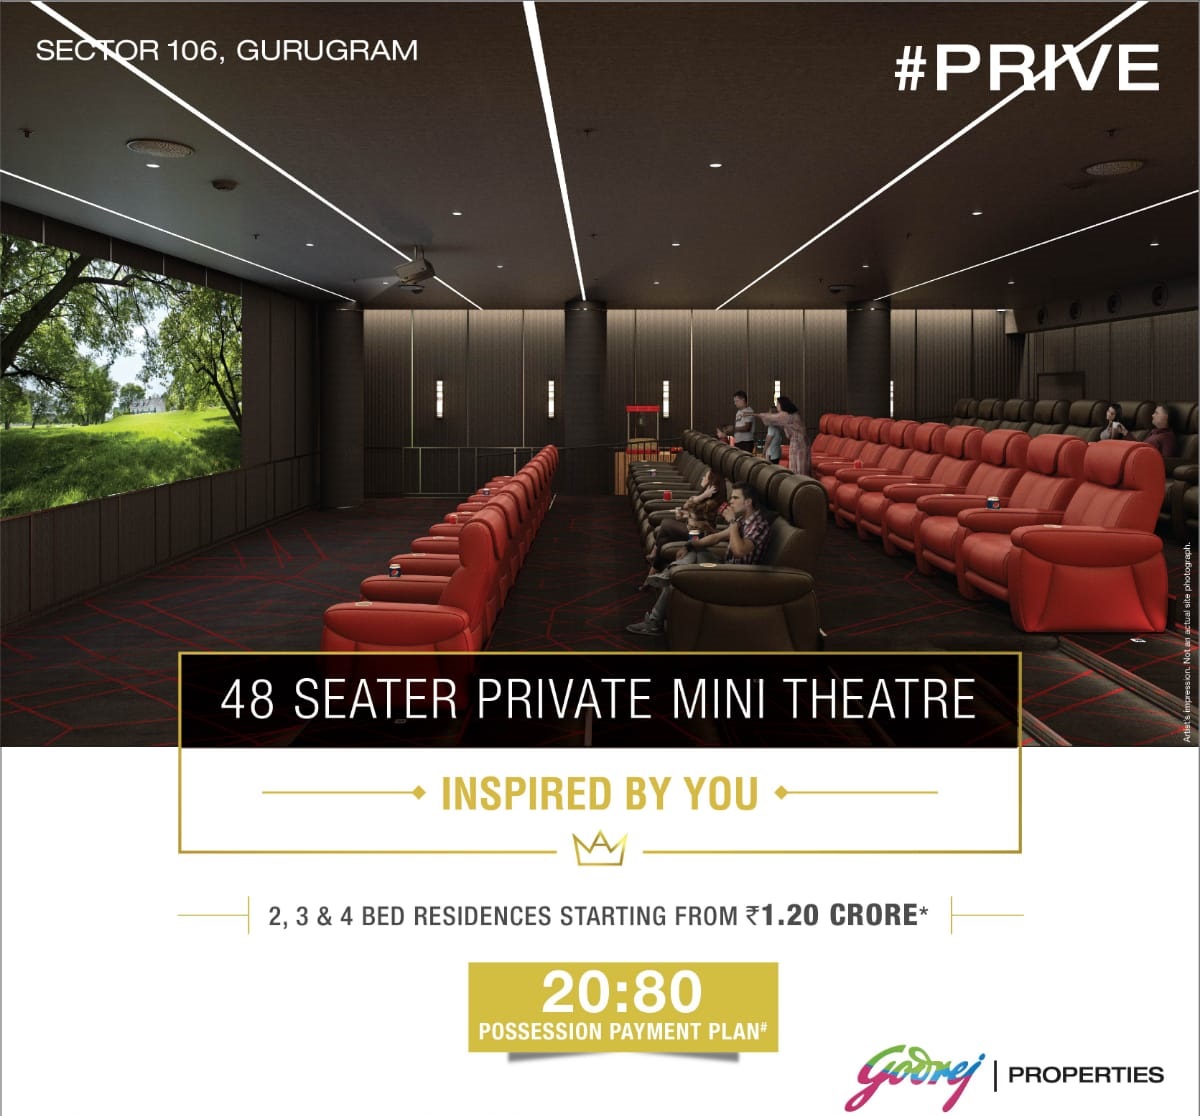 48 seater private mini theater at Godrej Prive in Gurgaon Update